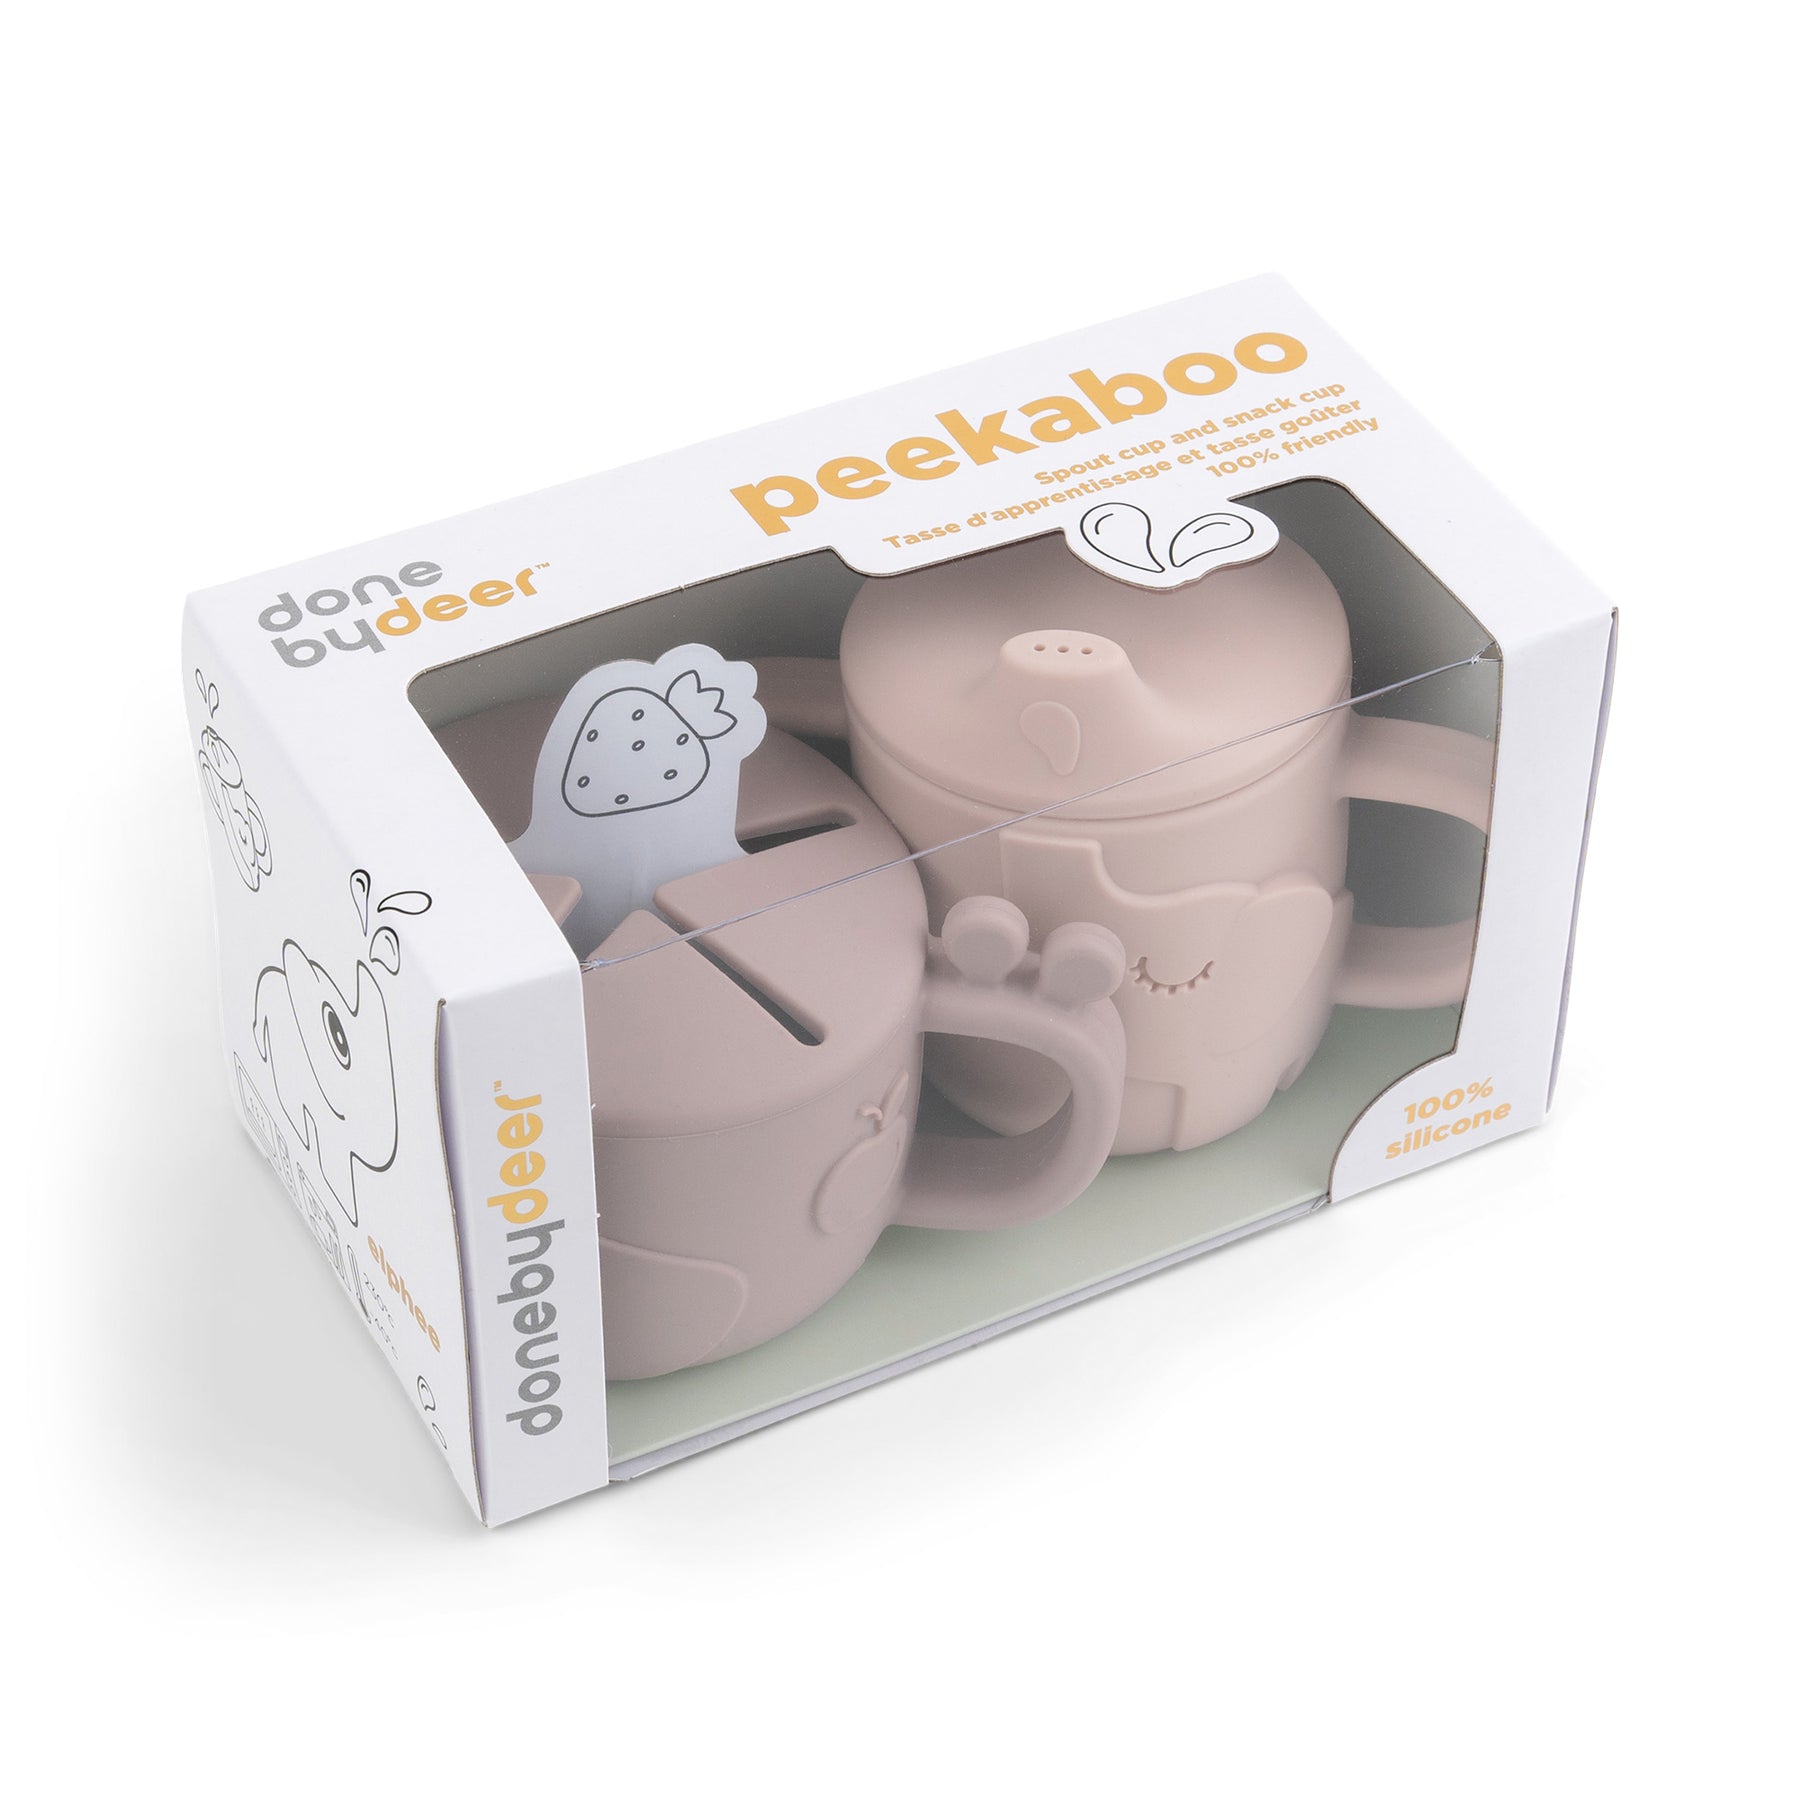 Peekaboo spout/snack cup set - Deer friends - Powder - Packaging